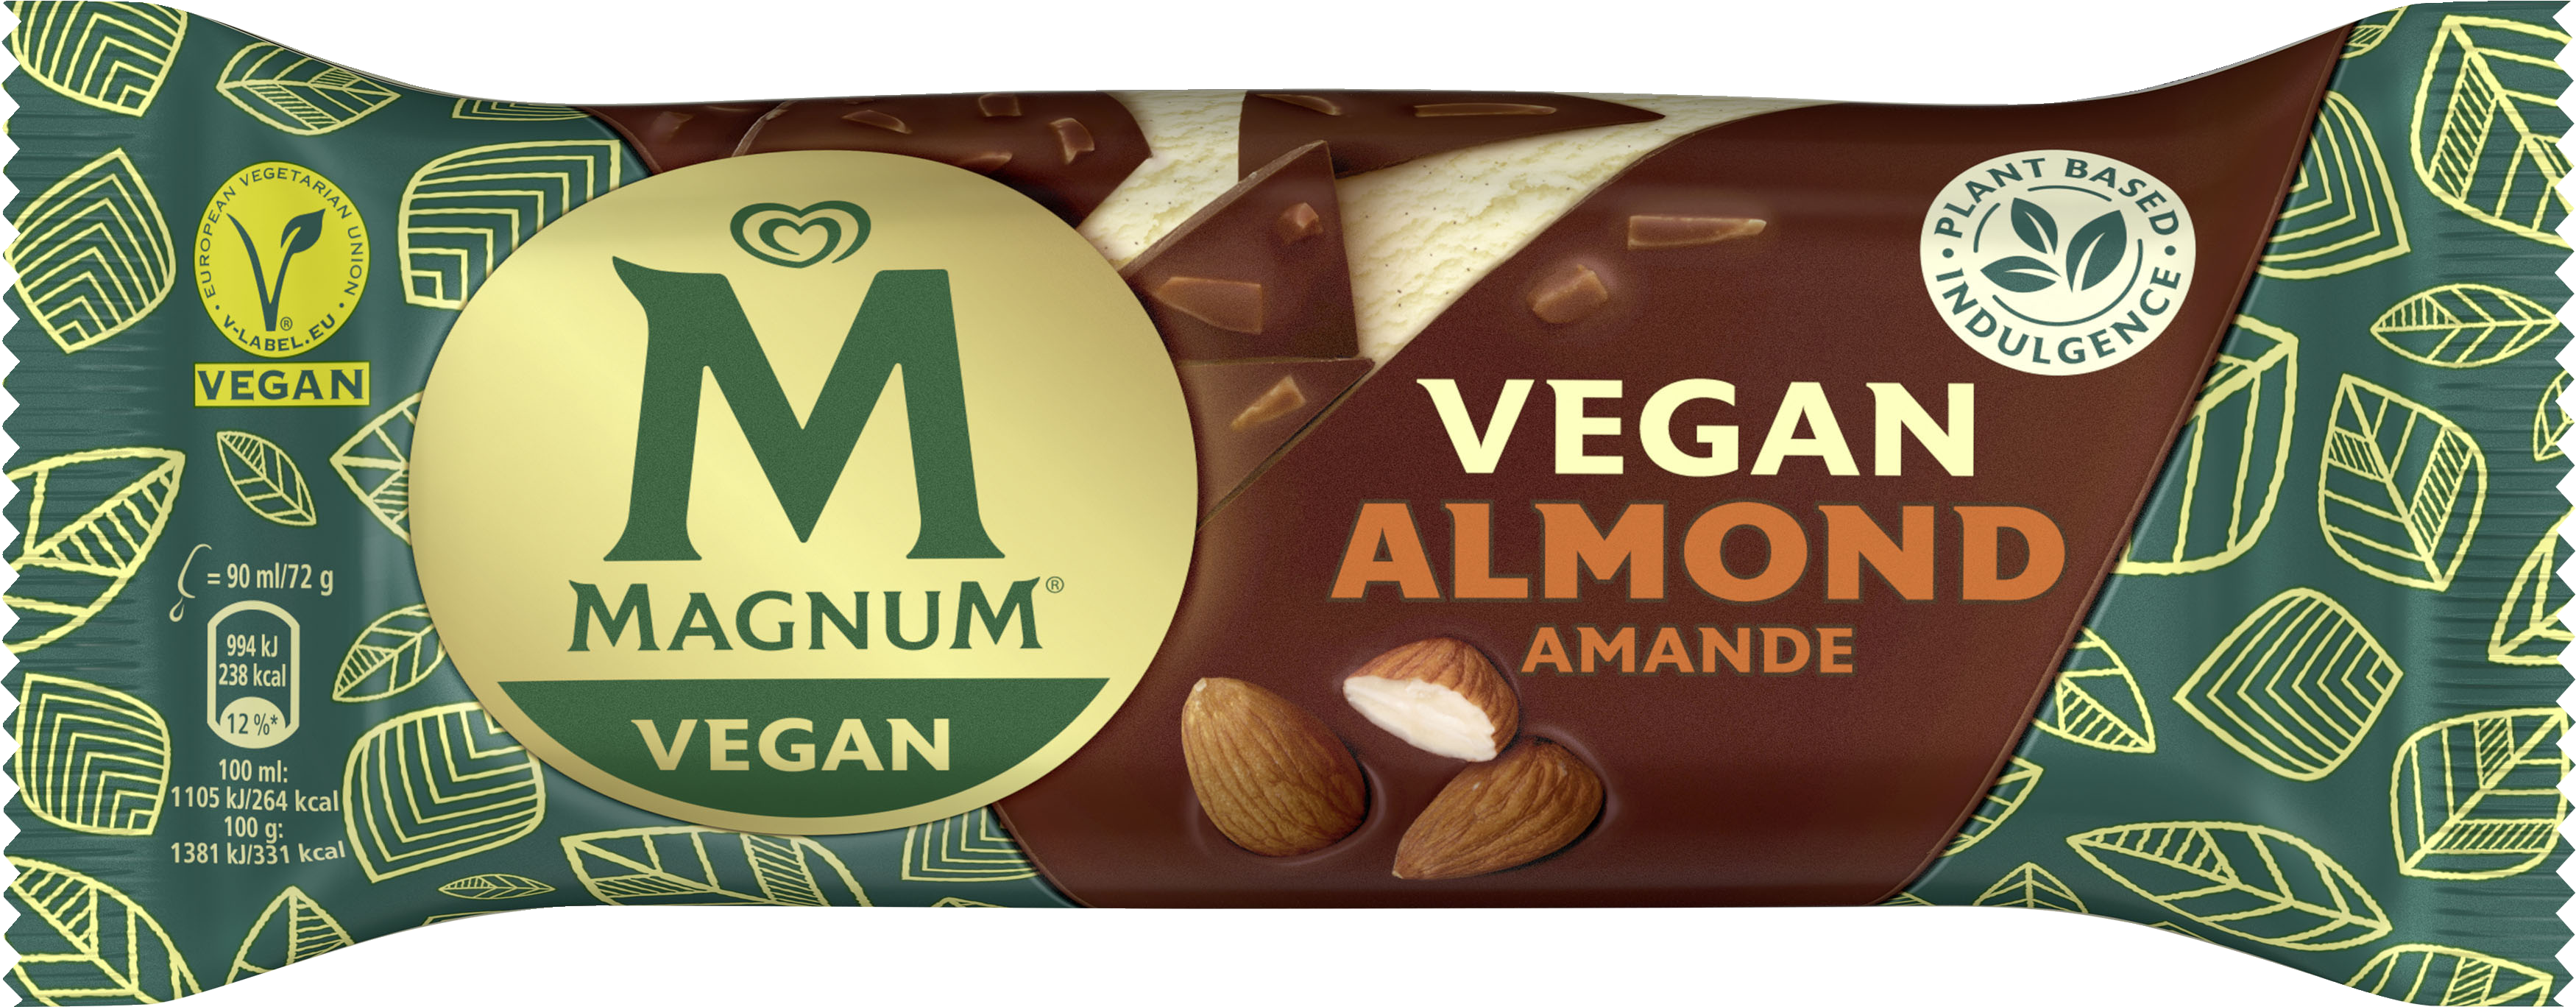 Magnum Vegan 72g Almond puikko